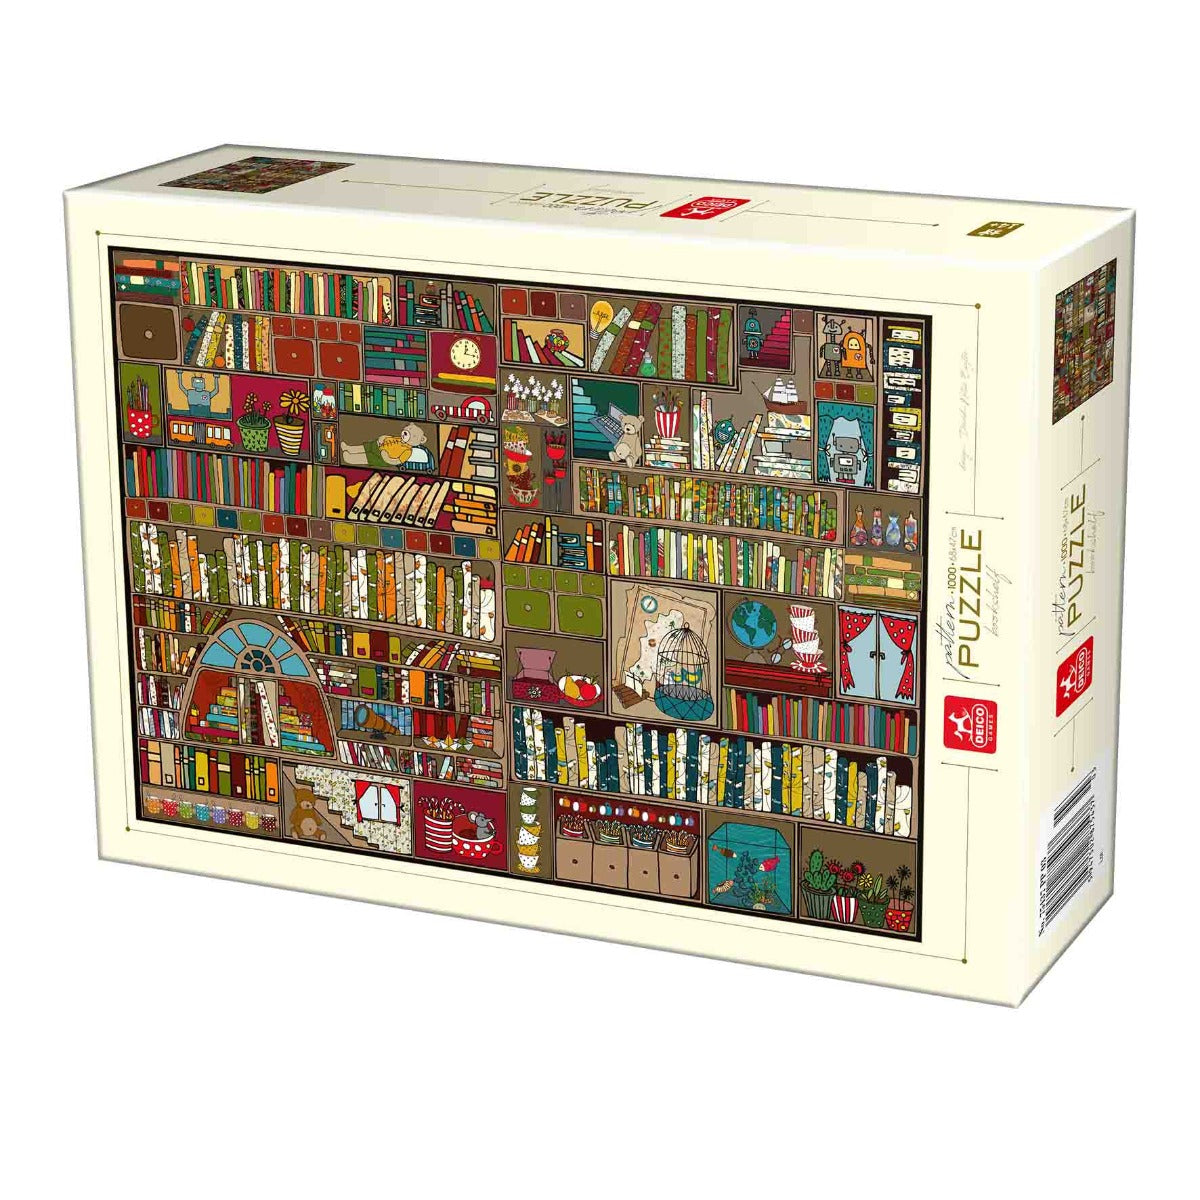 Dtoys - Bookshelf - 1000 Piece Jigsaw Puzzle